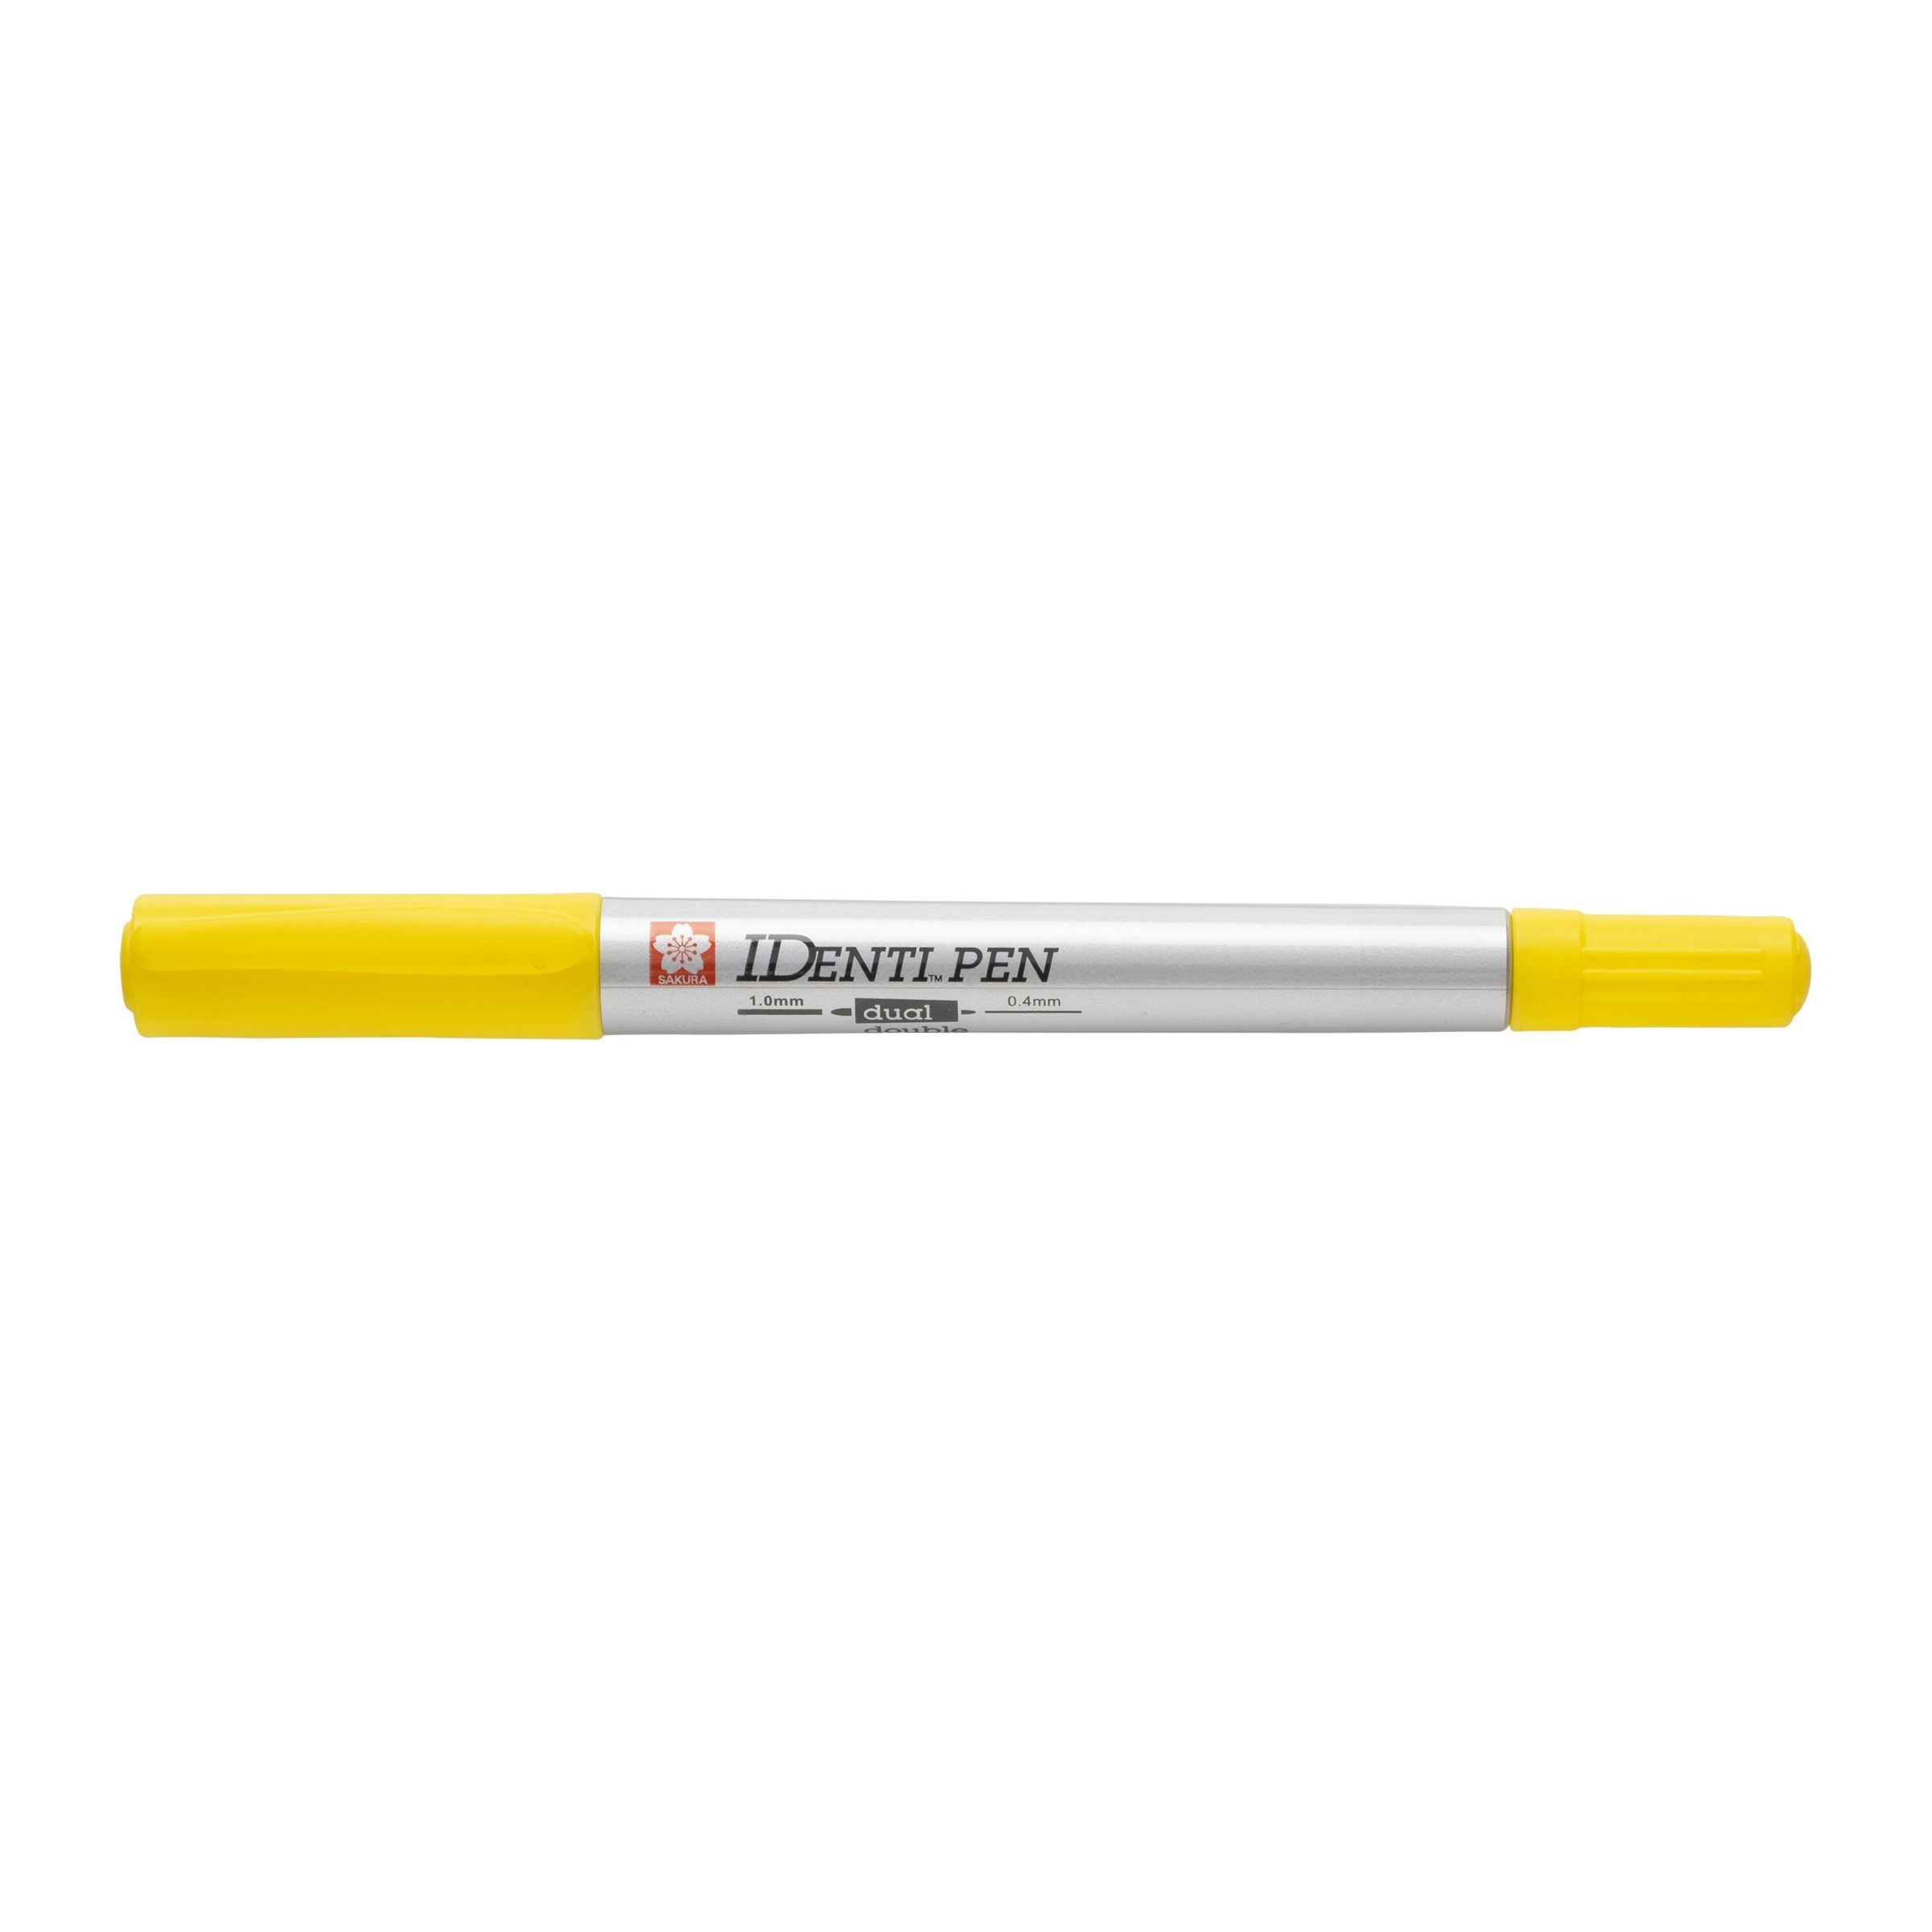 IDenti Pen Doppelspitze Permanentmarker 